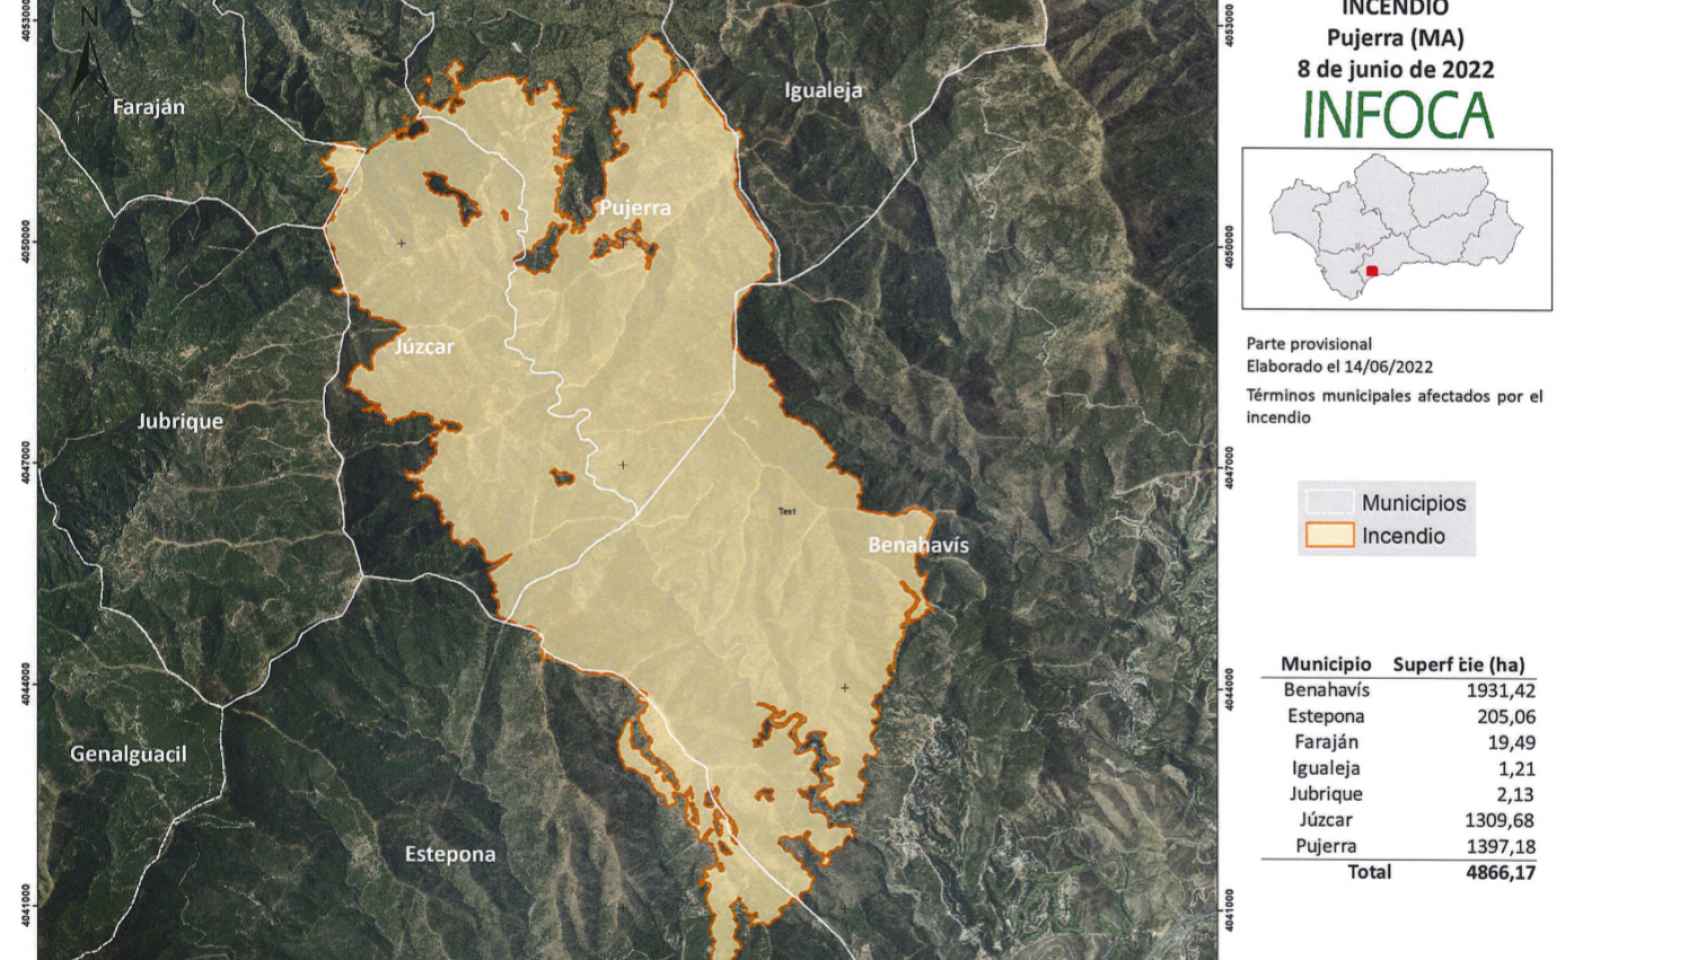 Infografía de la superficie afectada por el incendio de Pujerra.